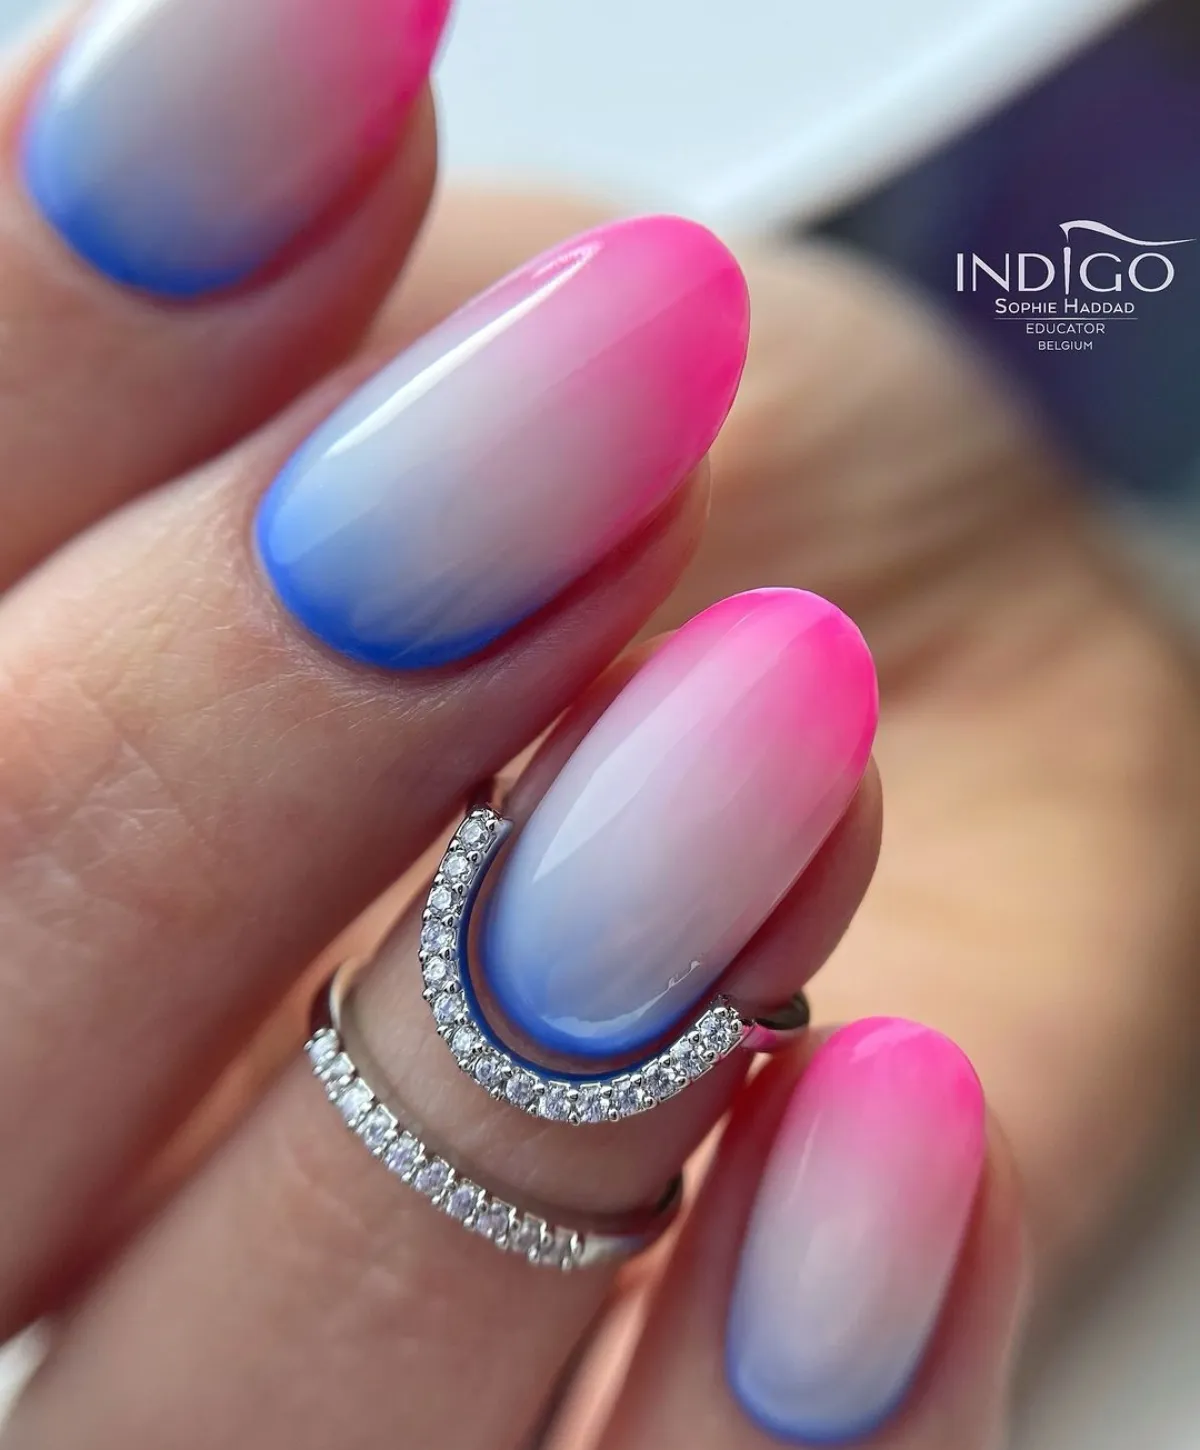 ombre nägel drei verlaufende farben blau weiß pink ovale nagelform